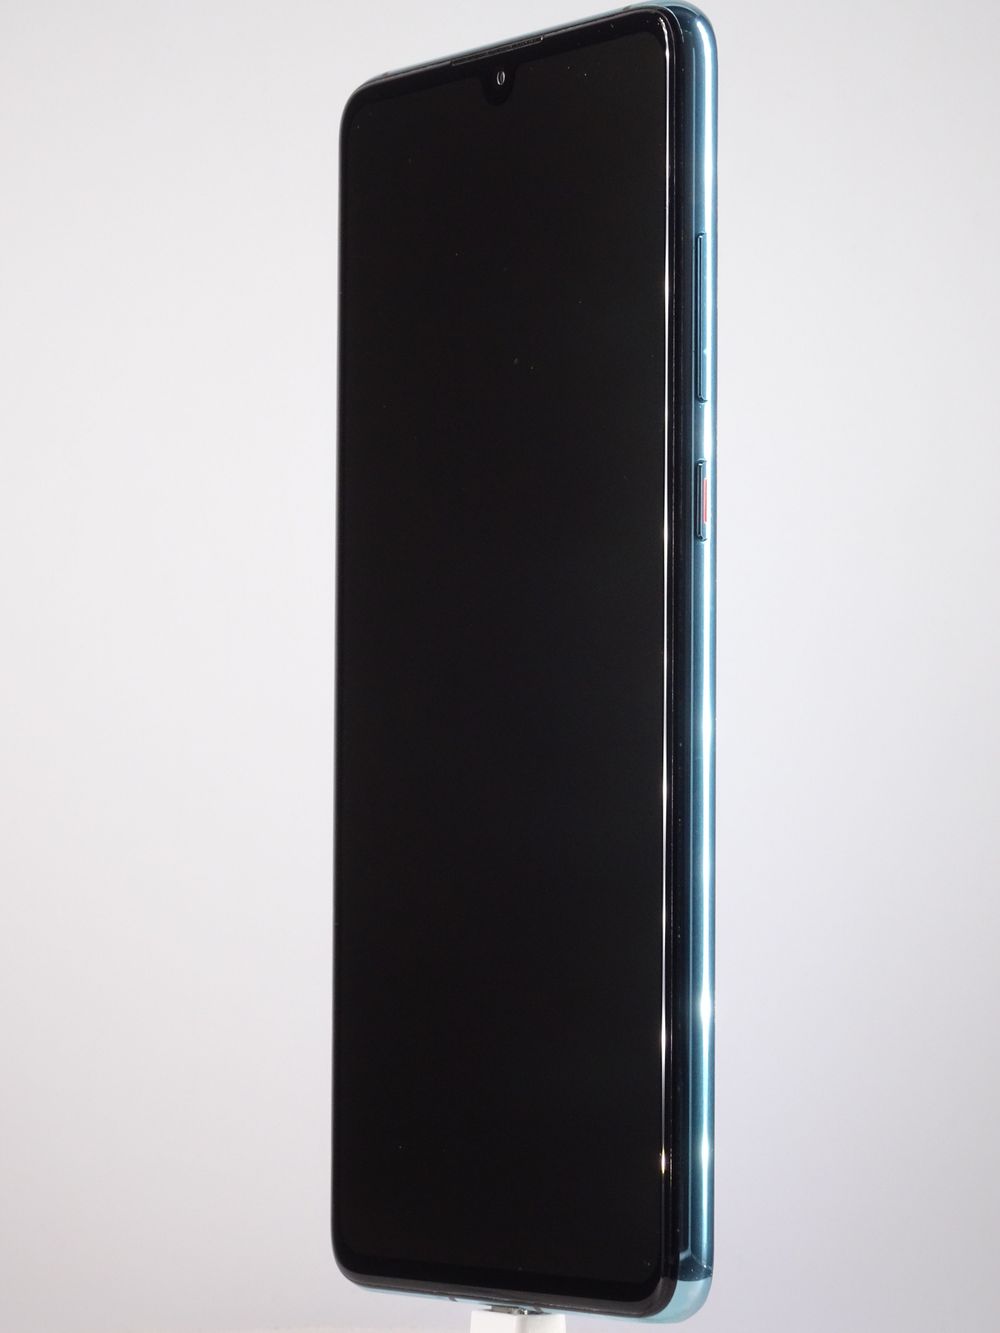 Мобилен телефон Huawei, P30, 64 GB, Aurora Blue,  Като нов